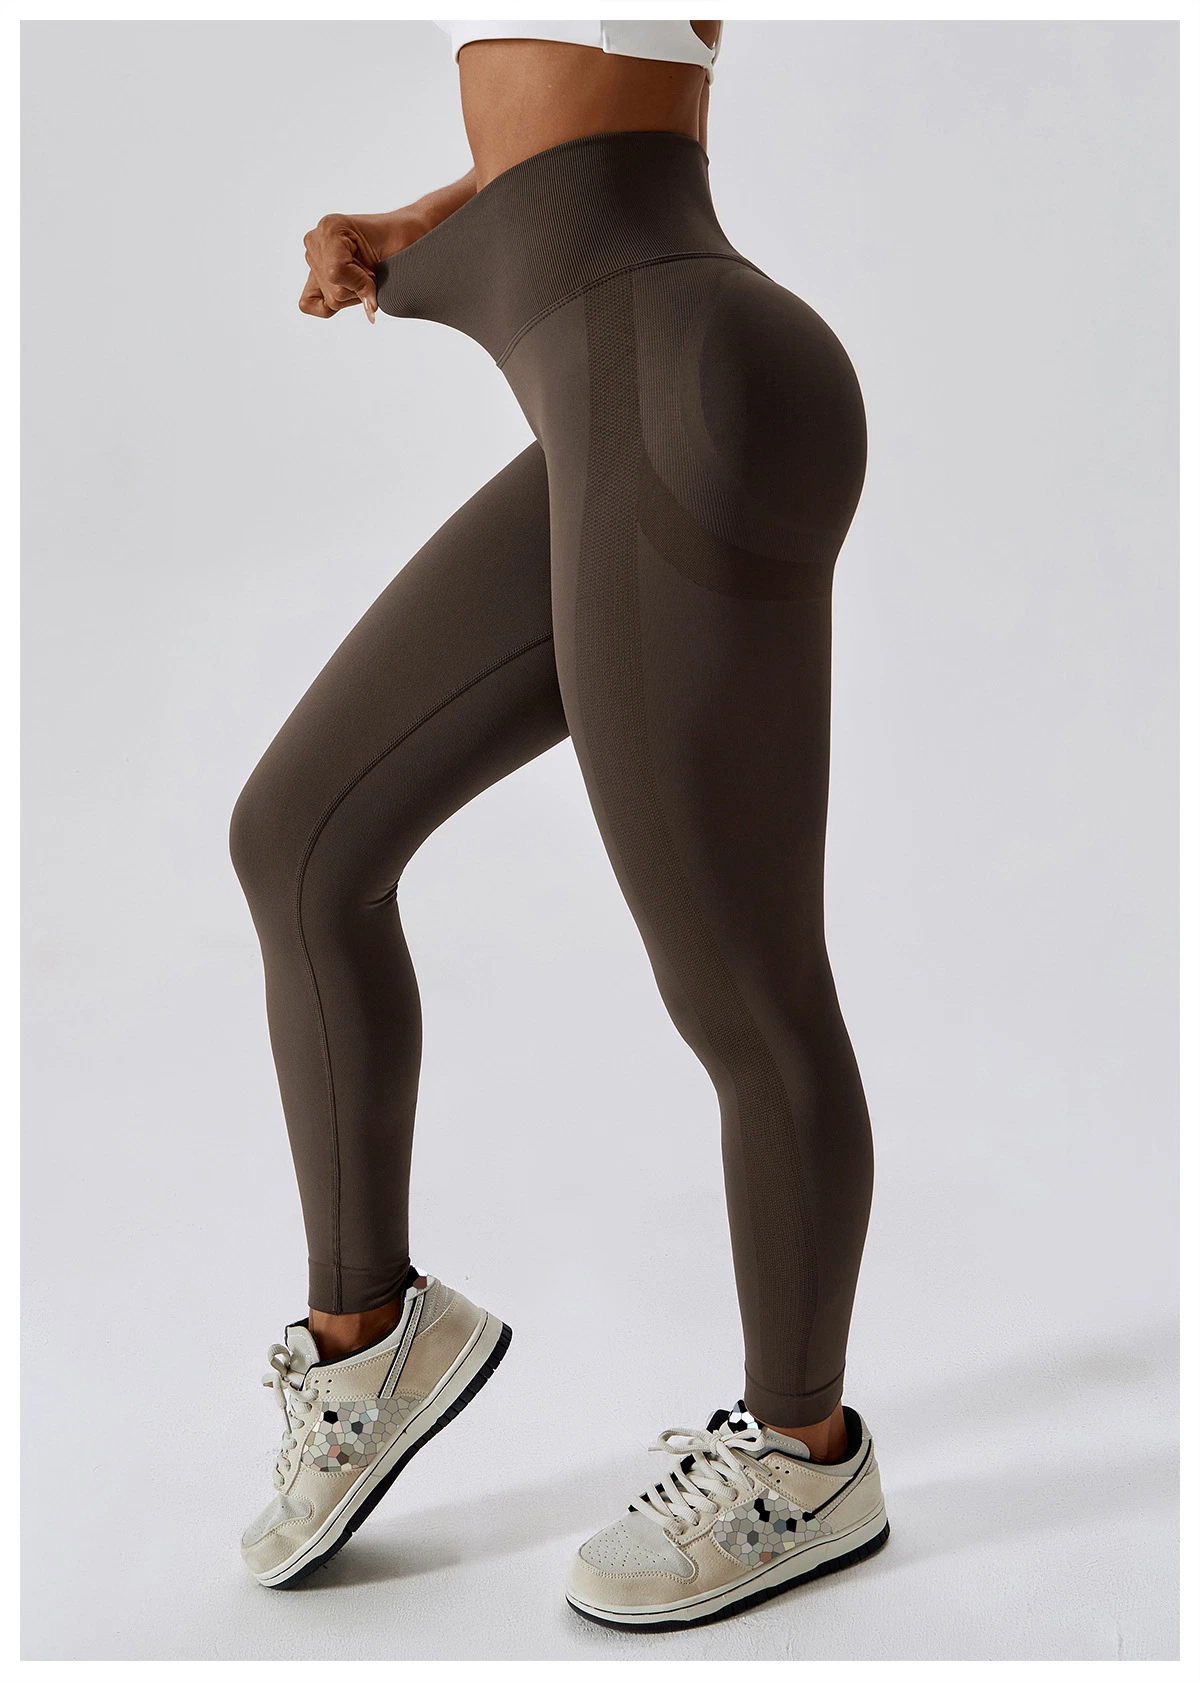 Бесшовные леггинсы для фитнеса Спорт женские тайтсы для тренинга на высокой таге на велотренирование Женские спортивные брюки для бега